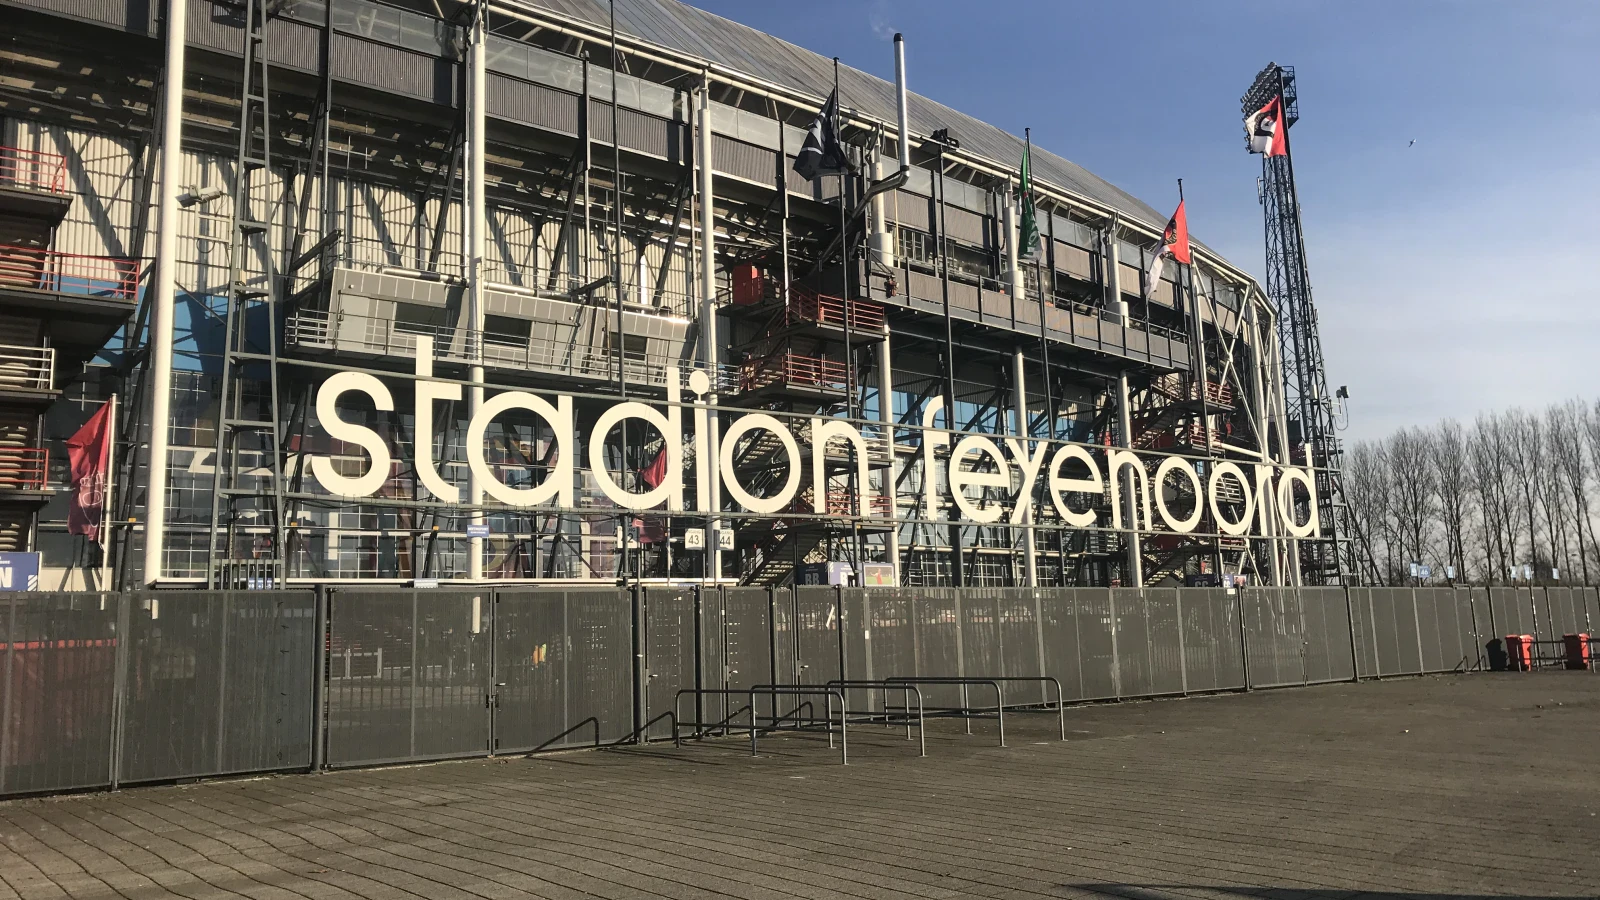 Nieuwe datum competitiewedstrijd AZ - Feyenoord bekend